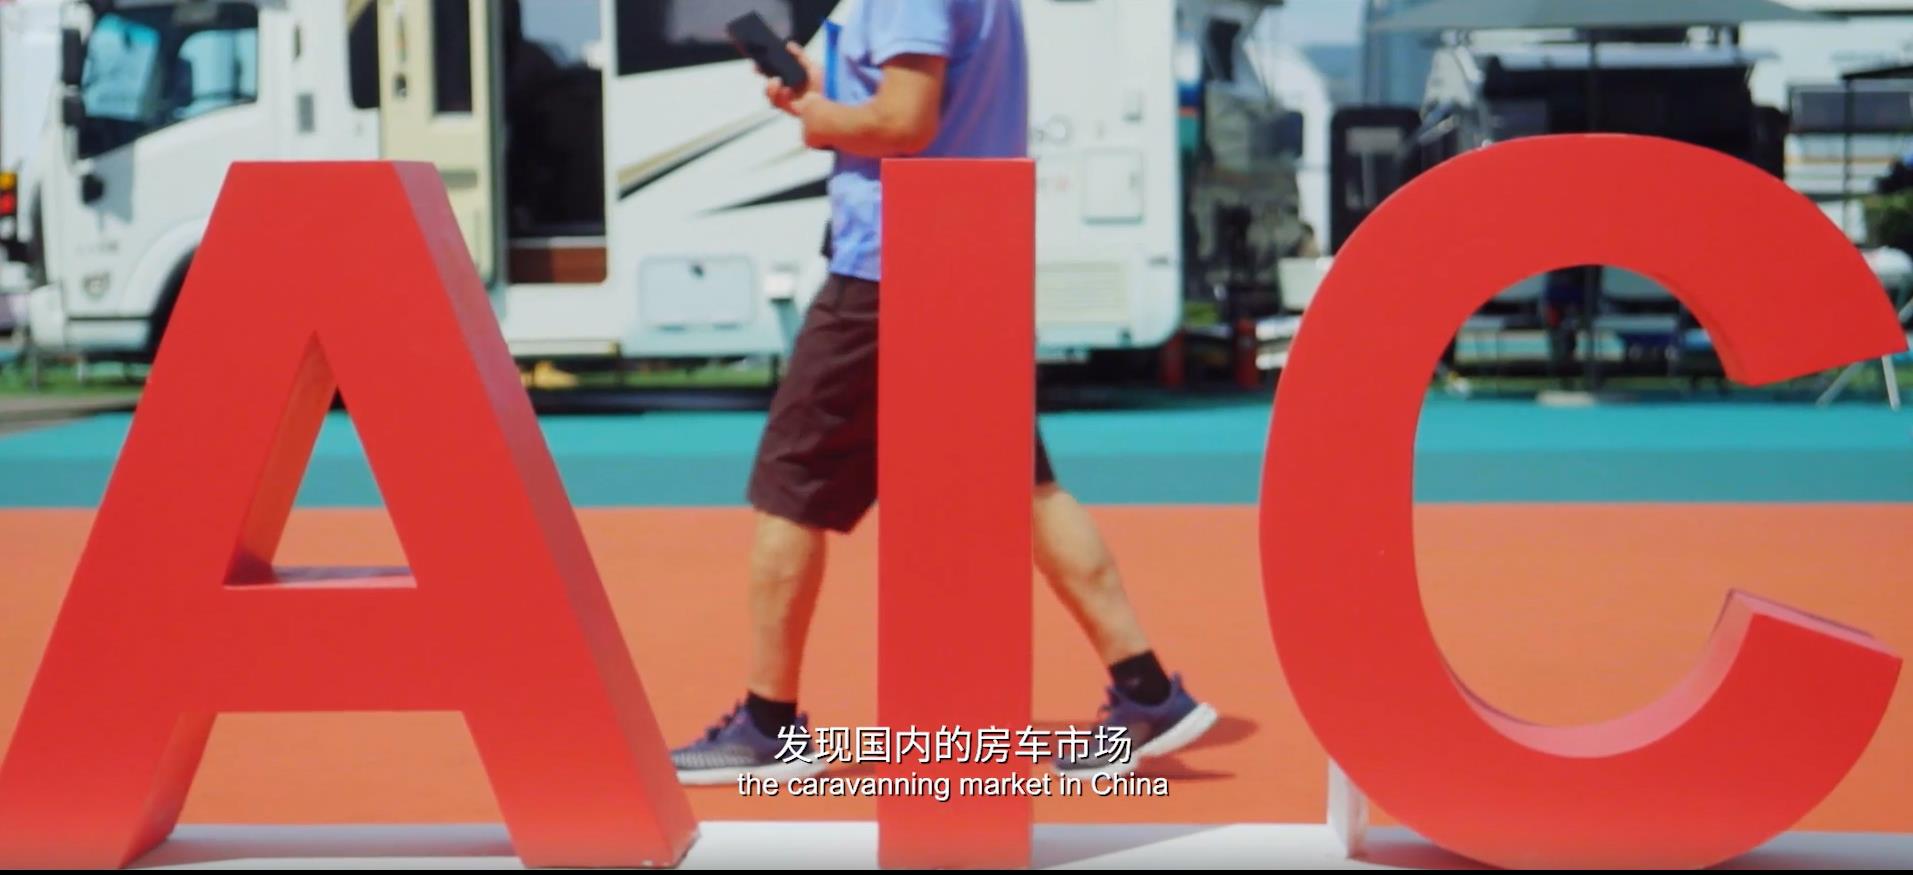 龙合智能汽车携网红房车进驻北京国际房车展